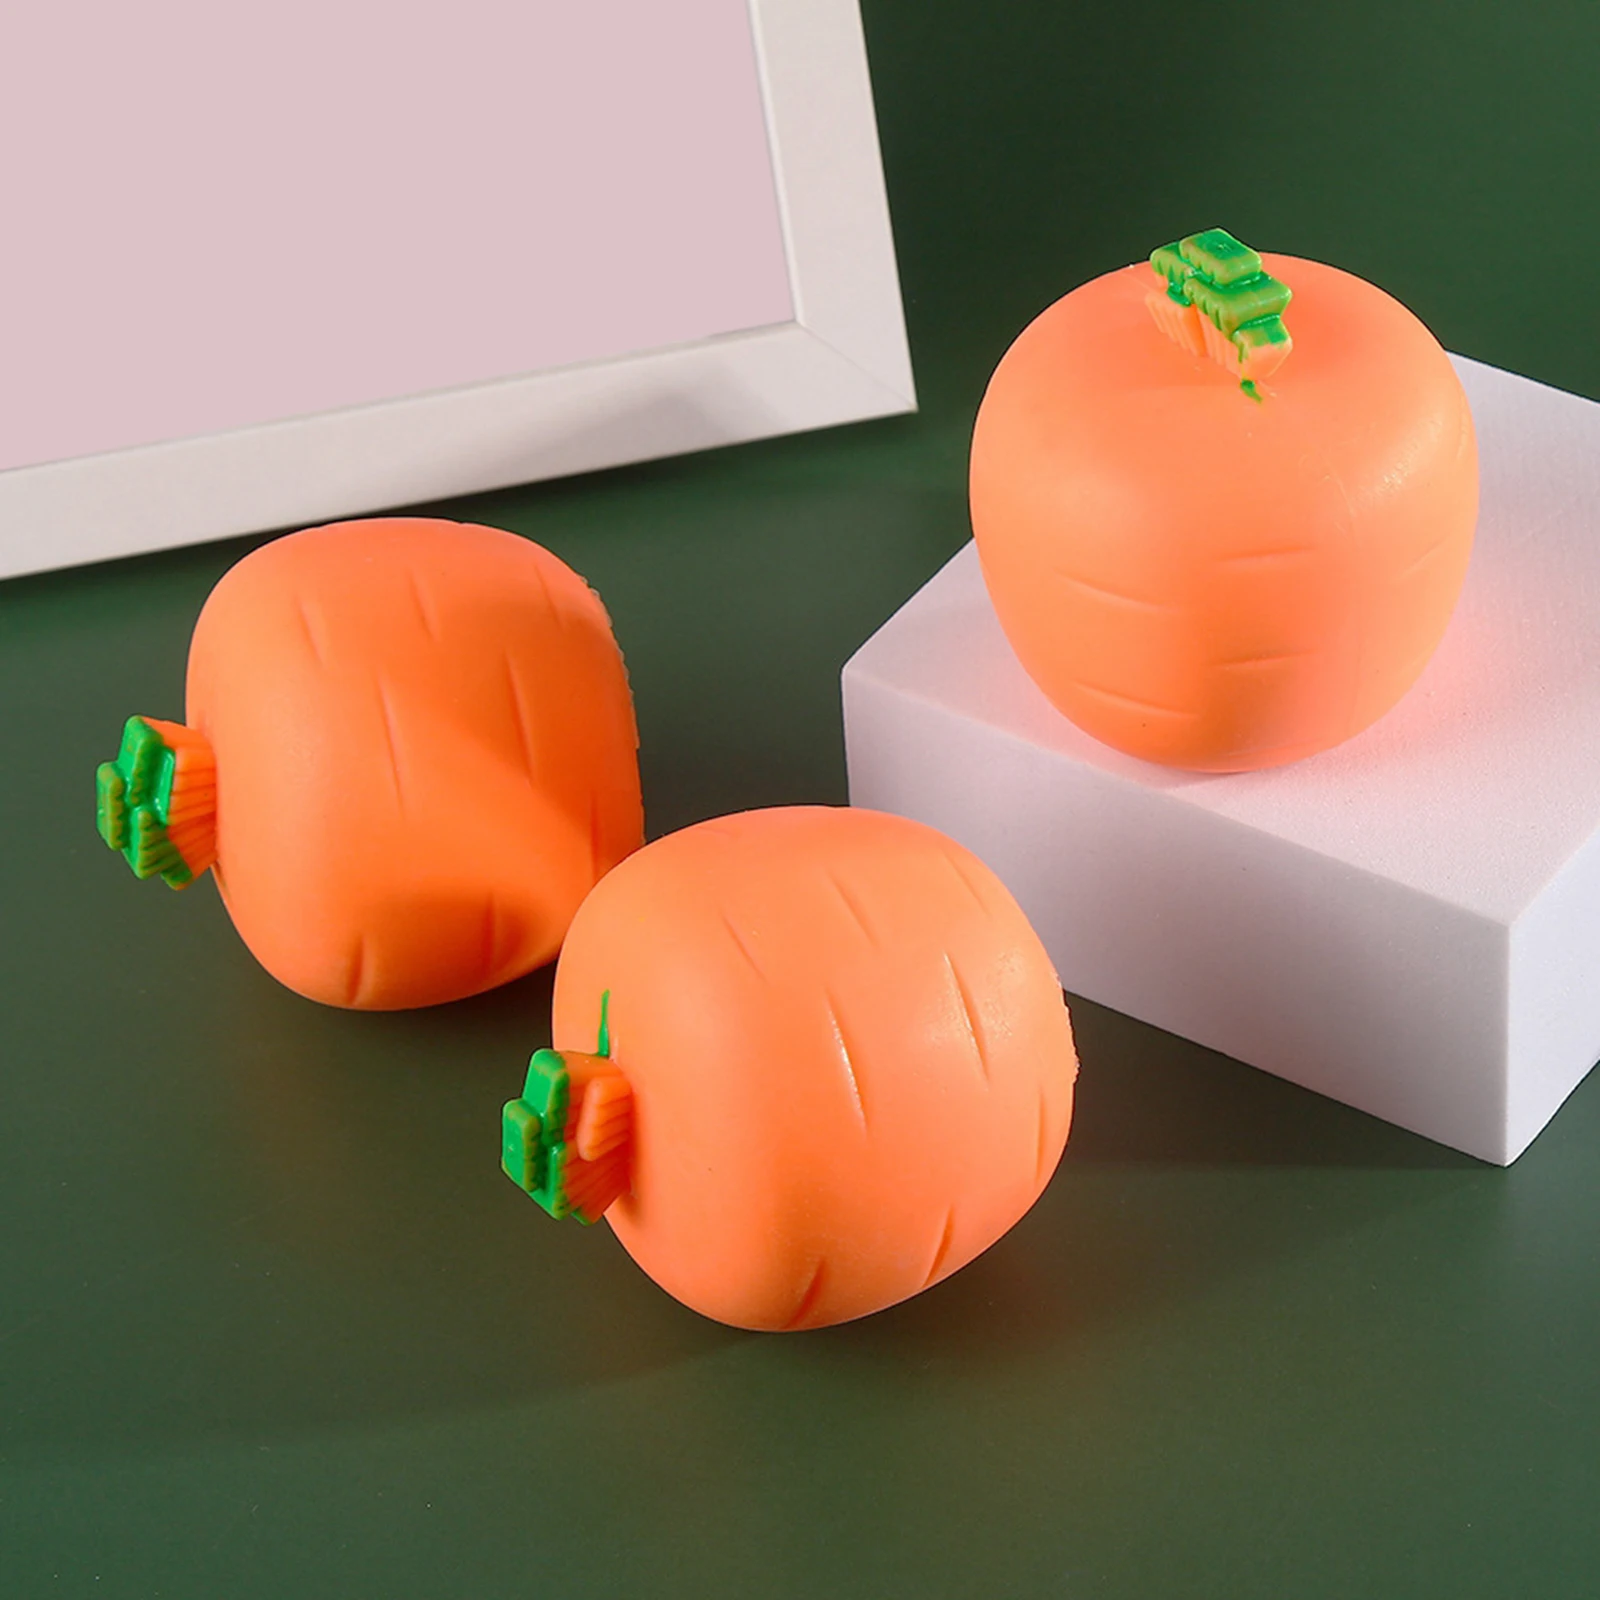 Carino carota coniglio forma agitarsi giocattoli divertenti spremere giocattoli decompressione giocattoli sensoriali noia giocattoli antistress per bambini adulti